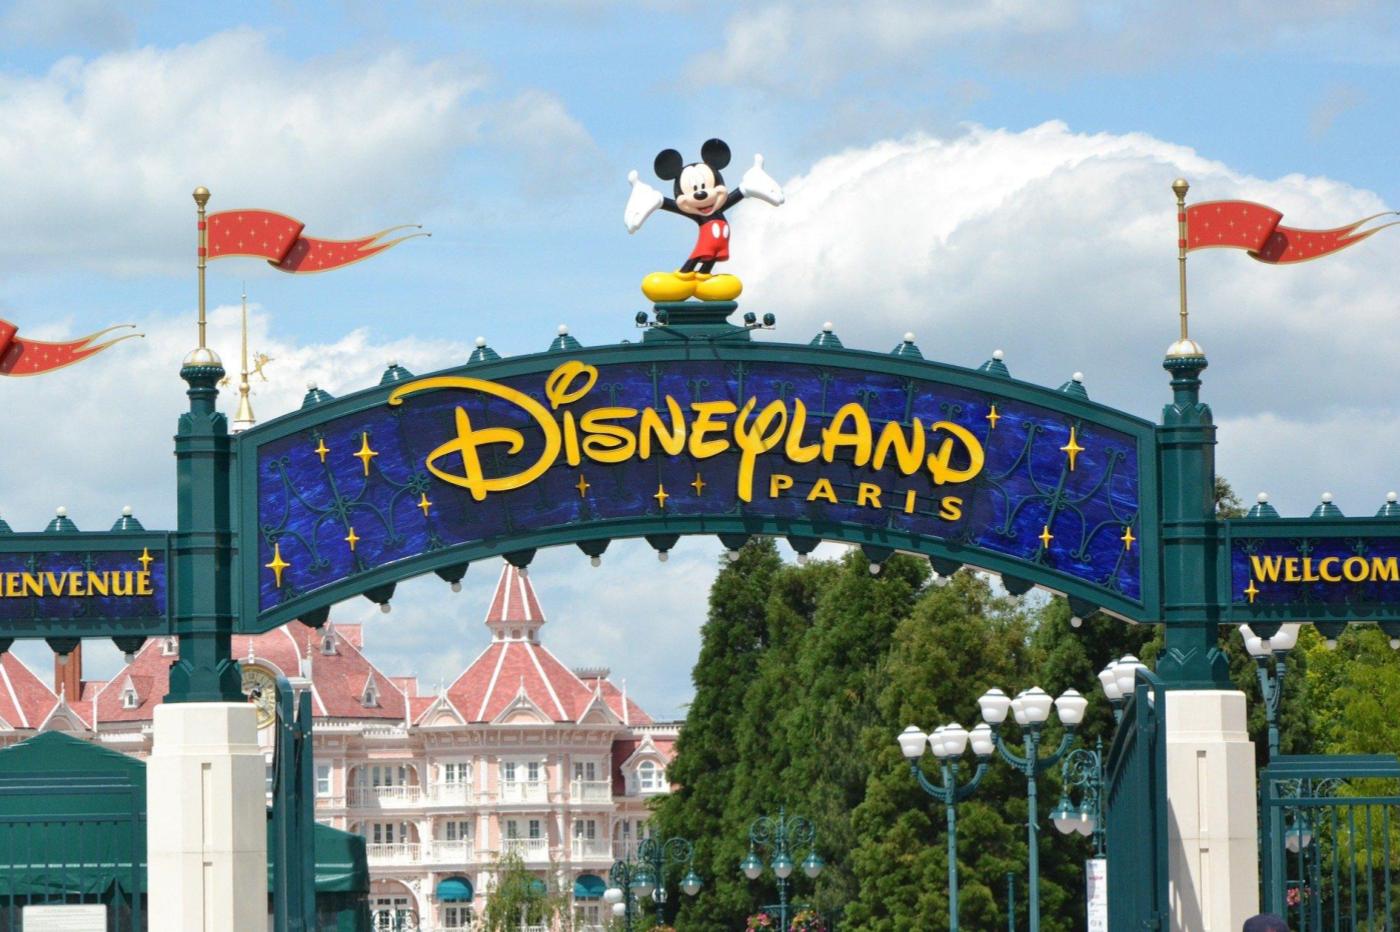 Disney : Sa Nouvelle Plateforme Pourrait devenir Le Royaume Du